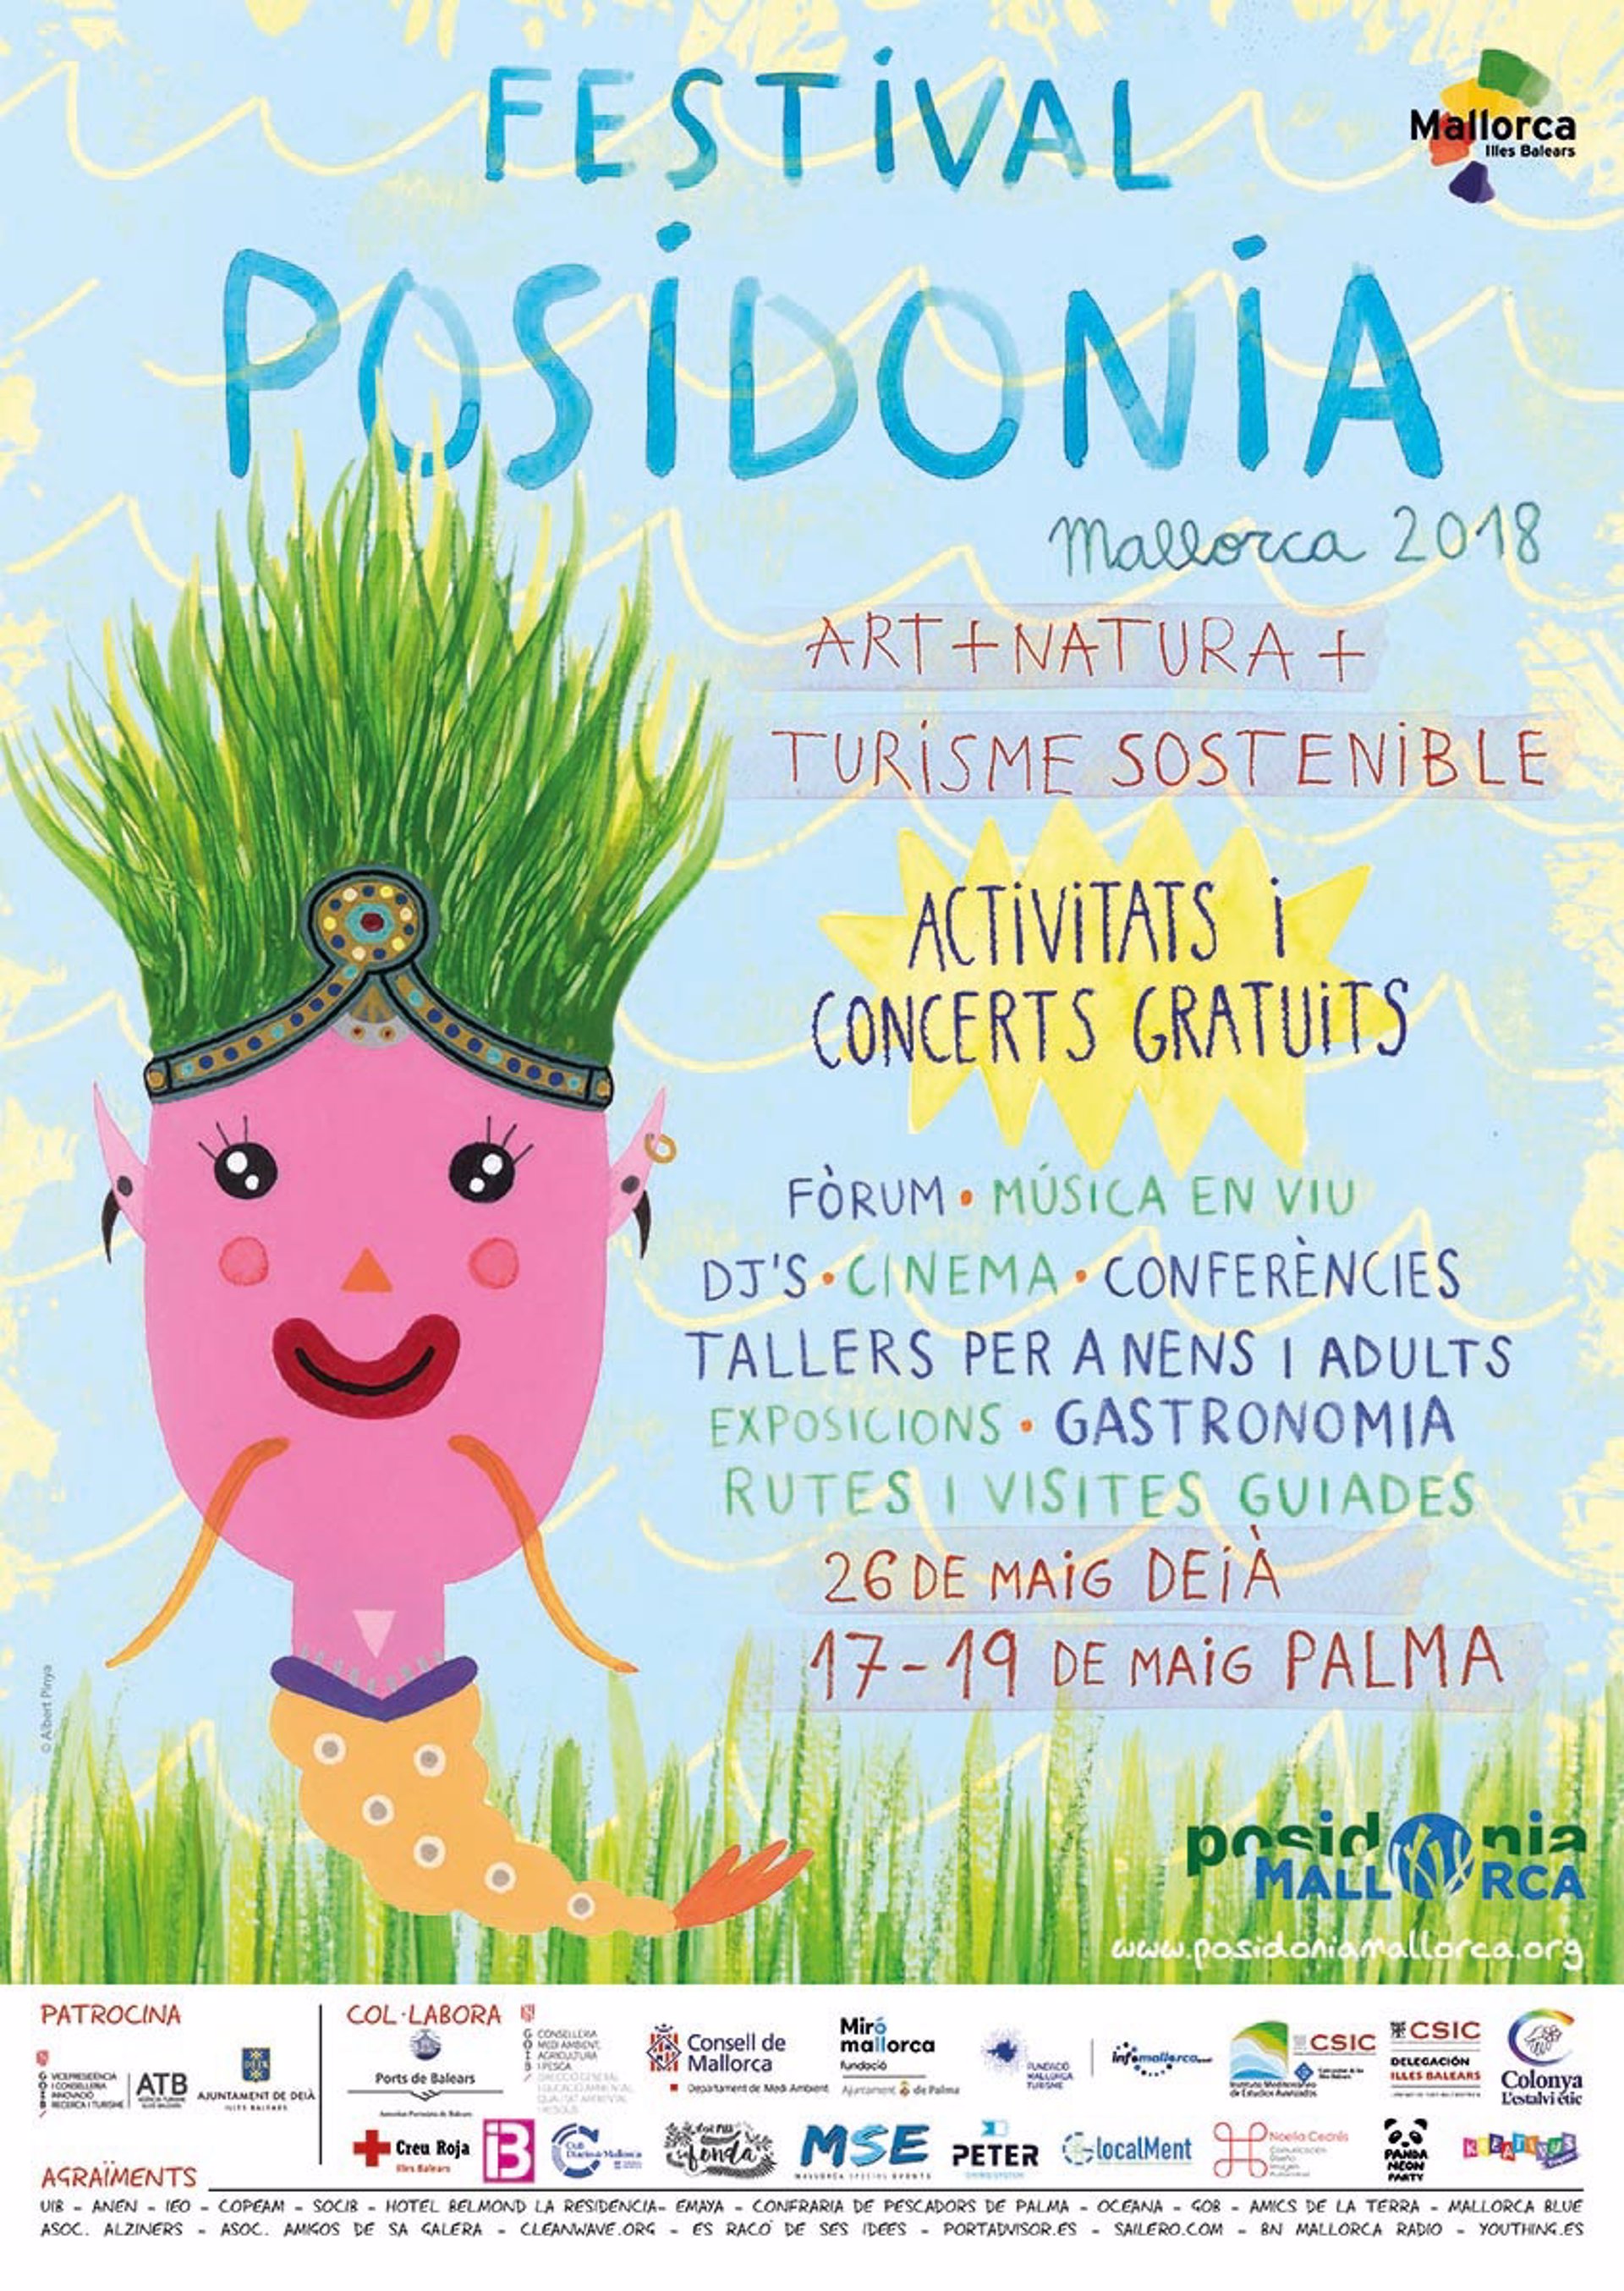 El Foro de turismo sostenible volverá a abrir este año el Festival Posidonia Mallorca